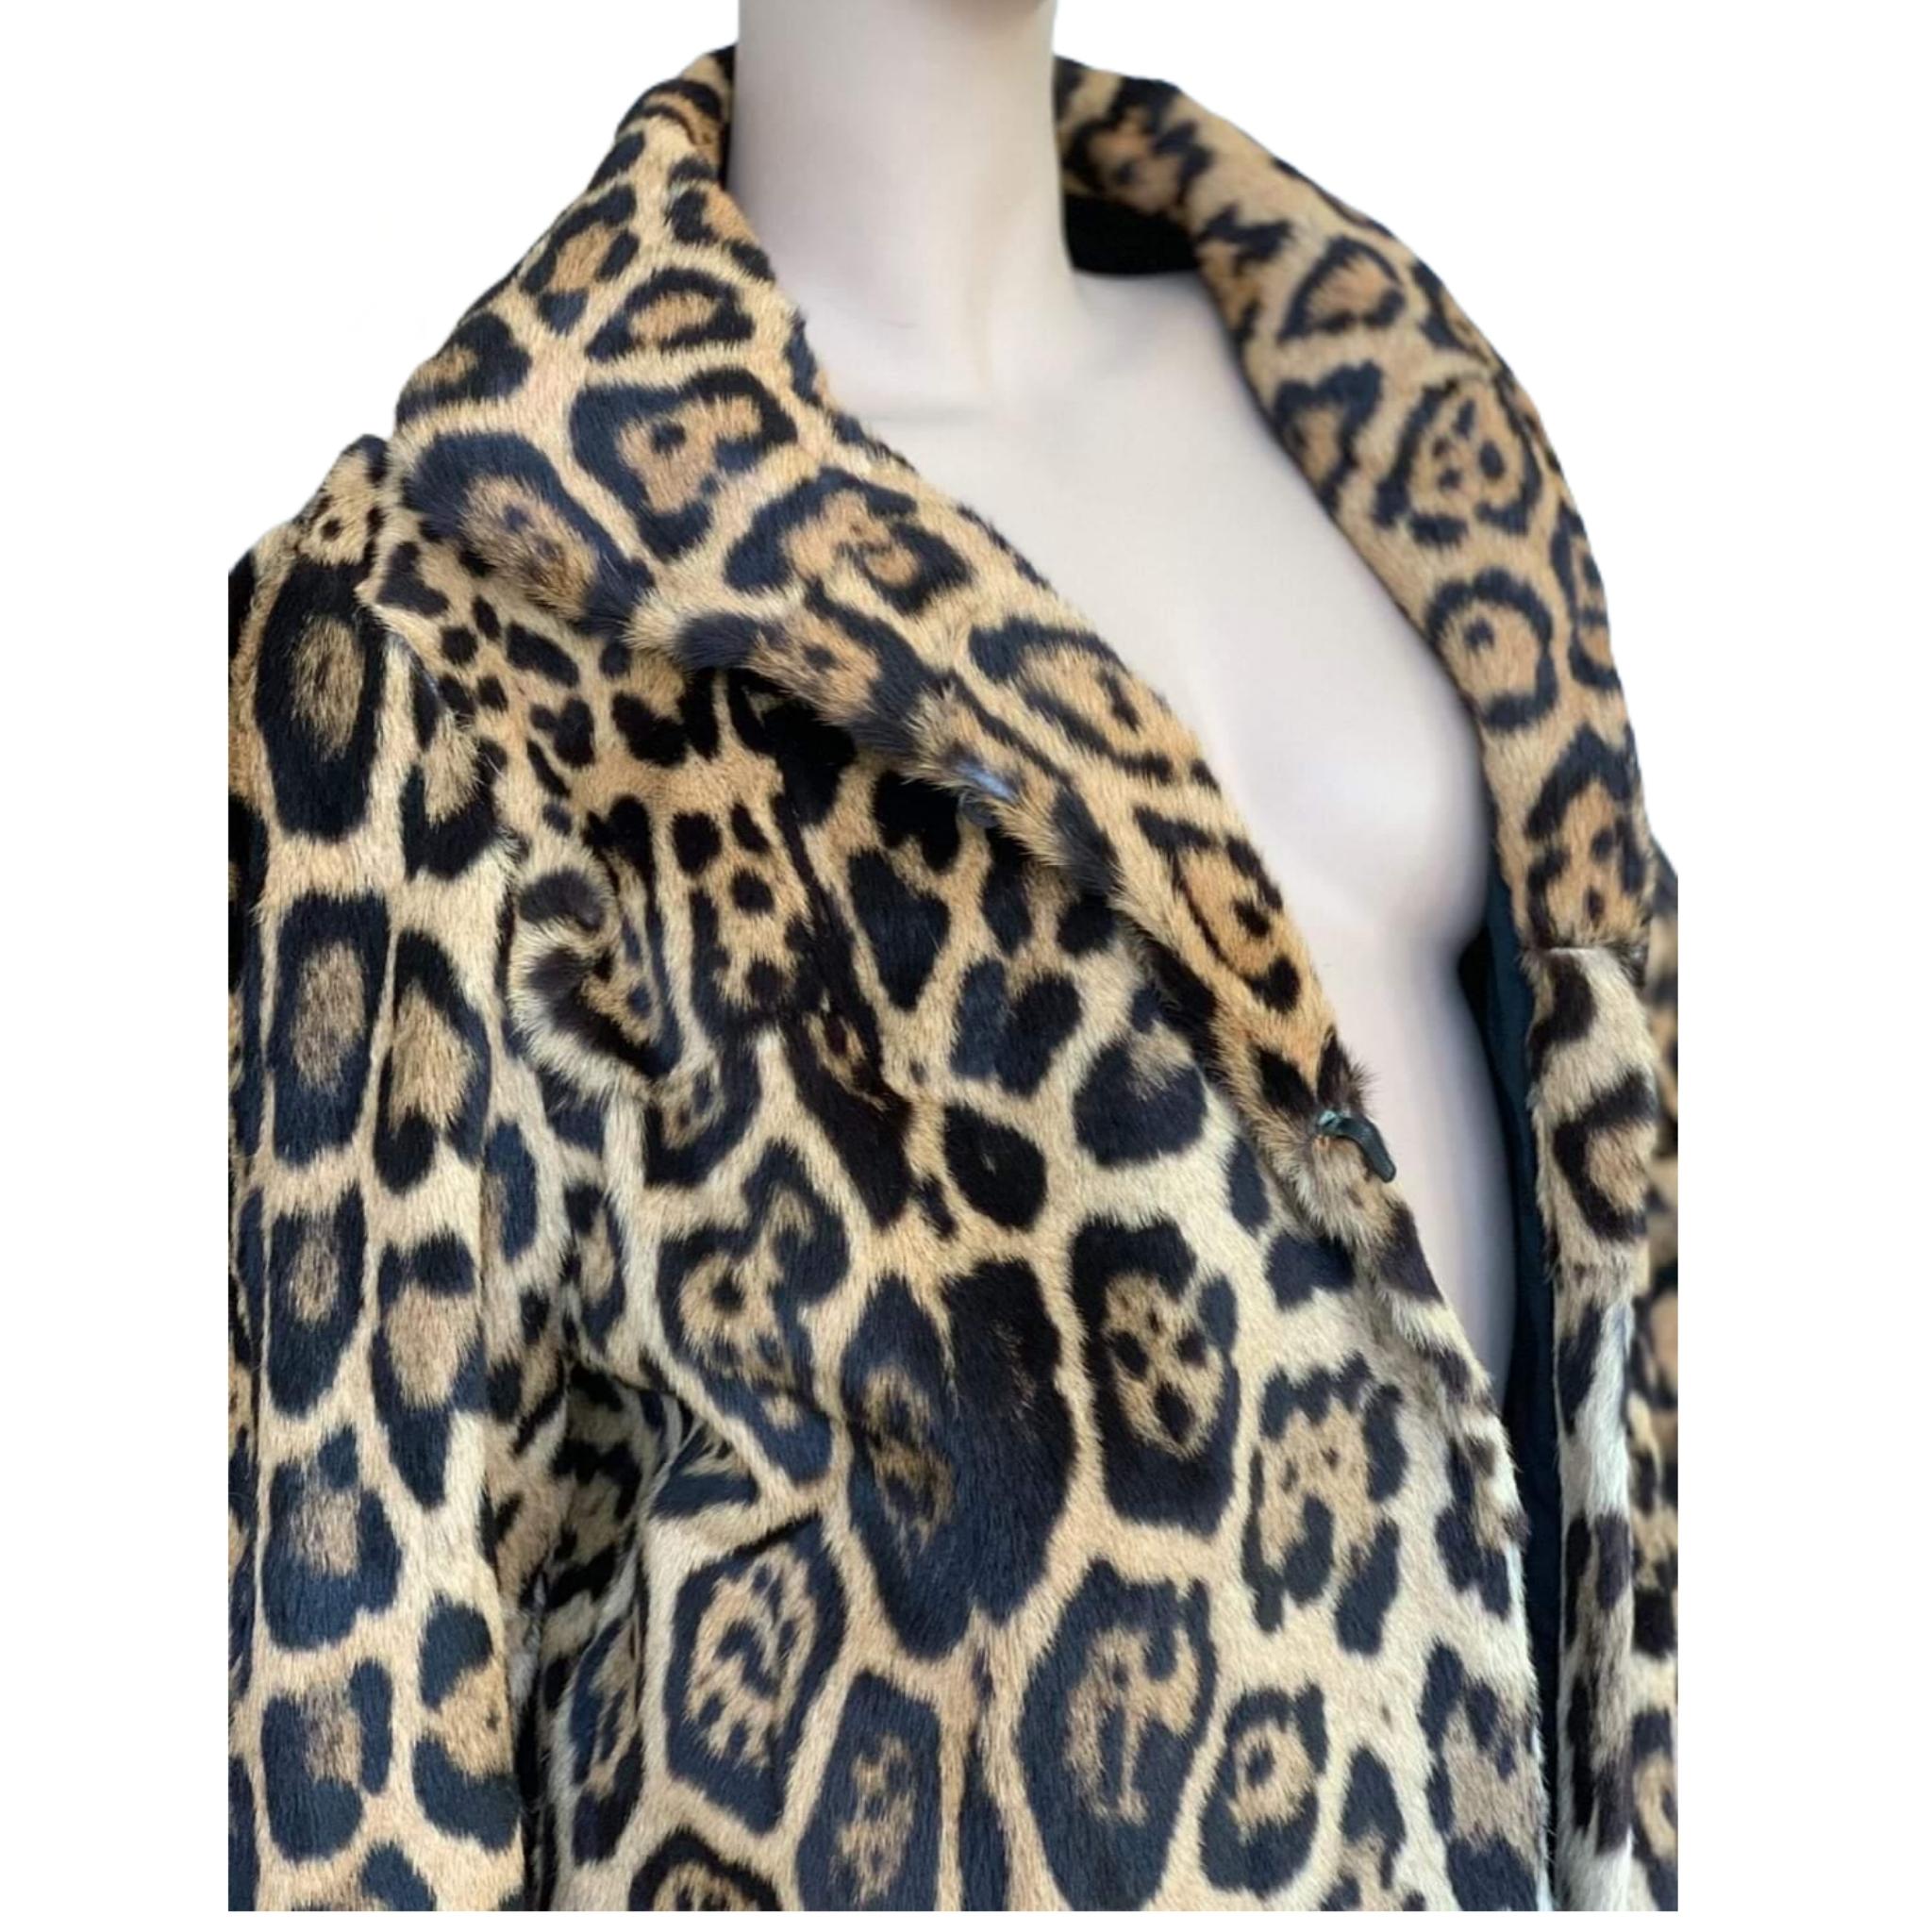 Vintage Jaguar fur coat size 8 1